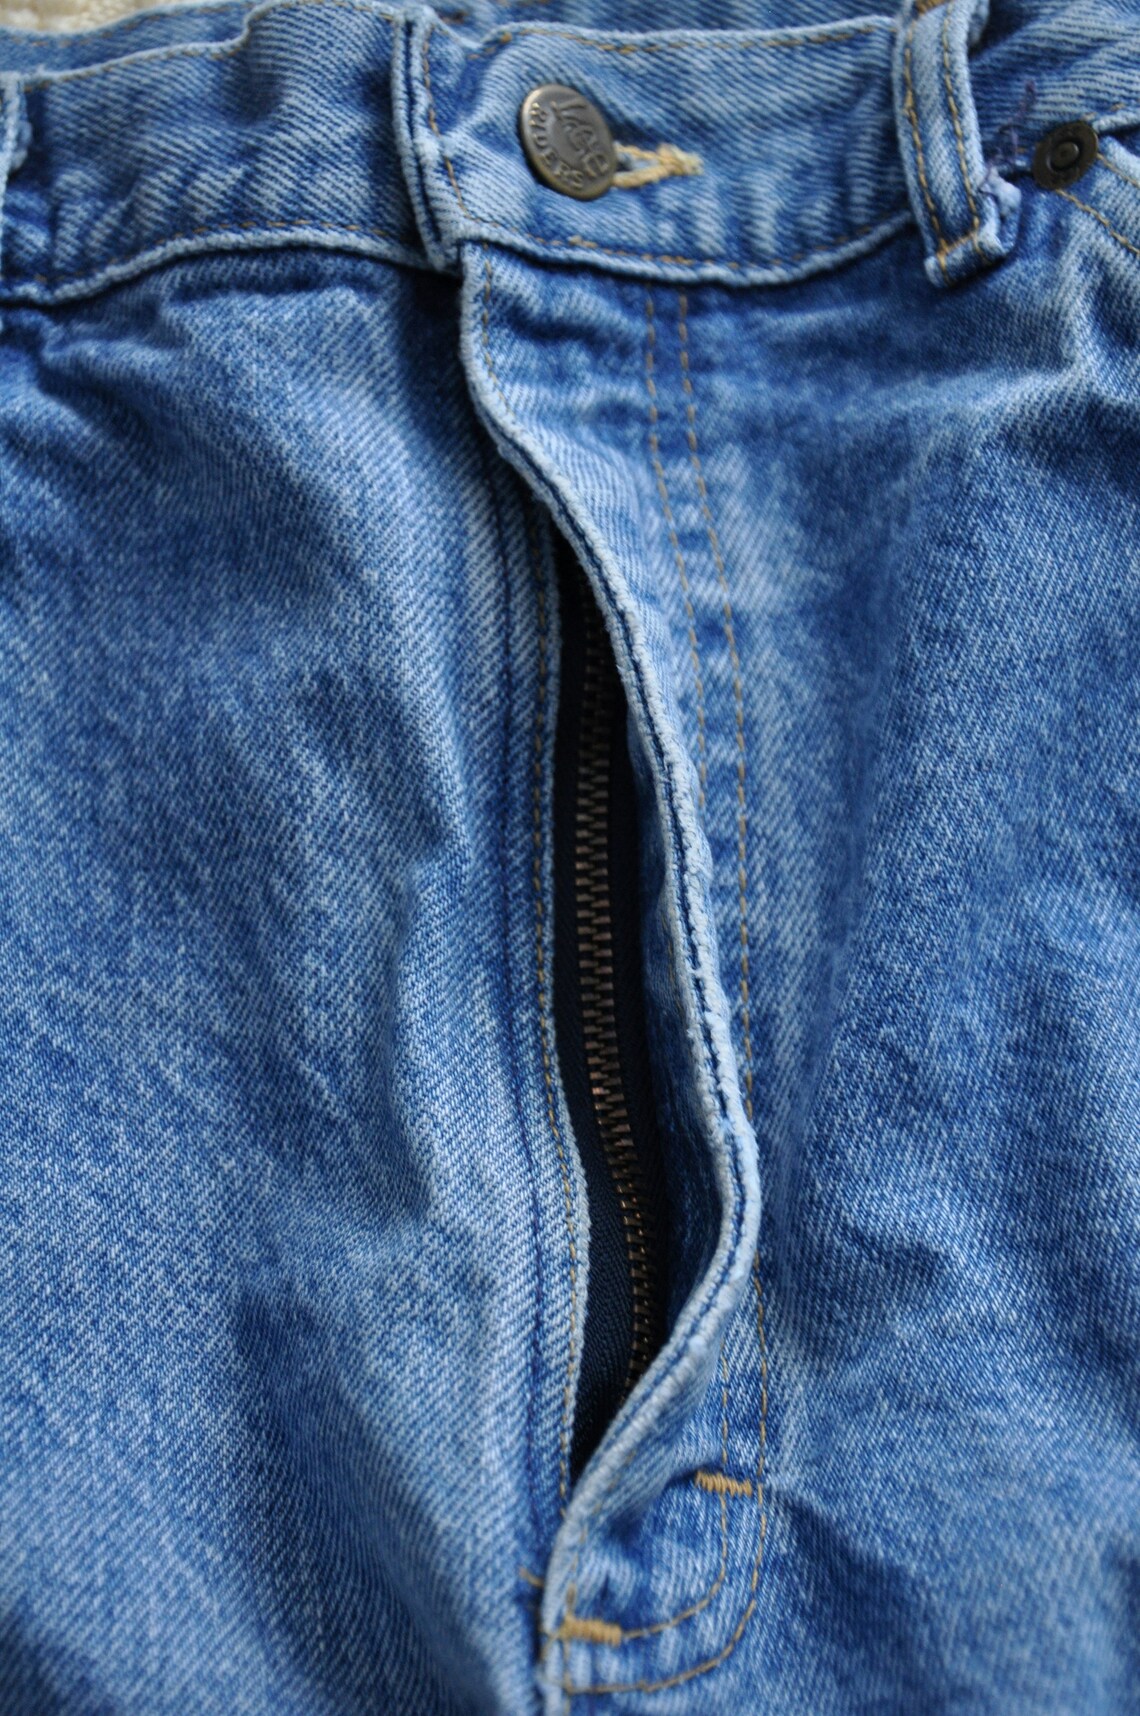 Distressed 1980s LEE Blue Jeans Vintage Light Wash Jeans - Etsy